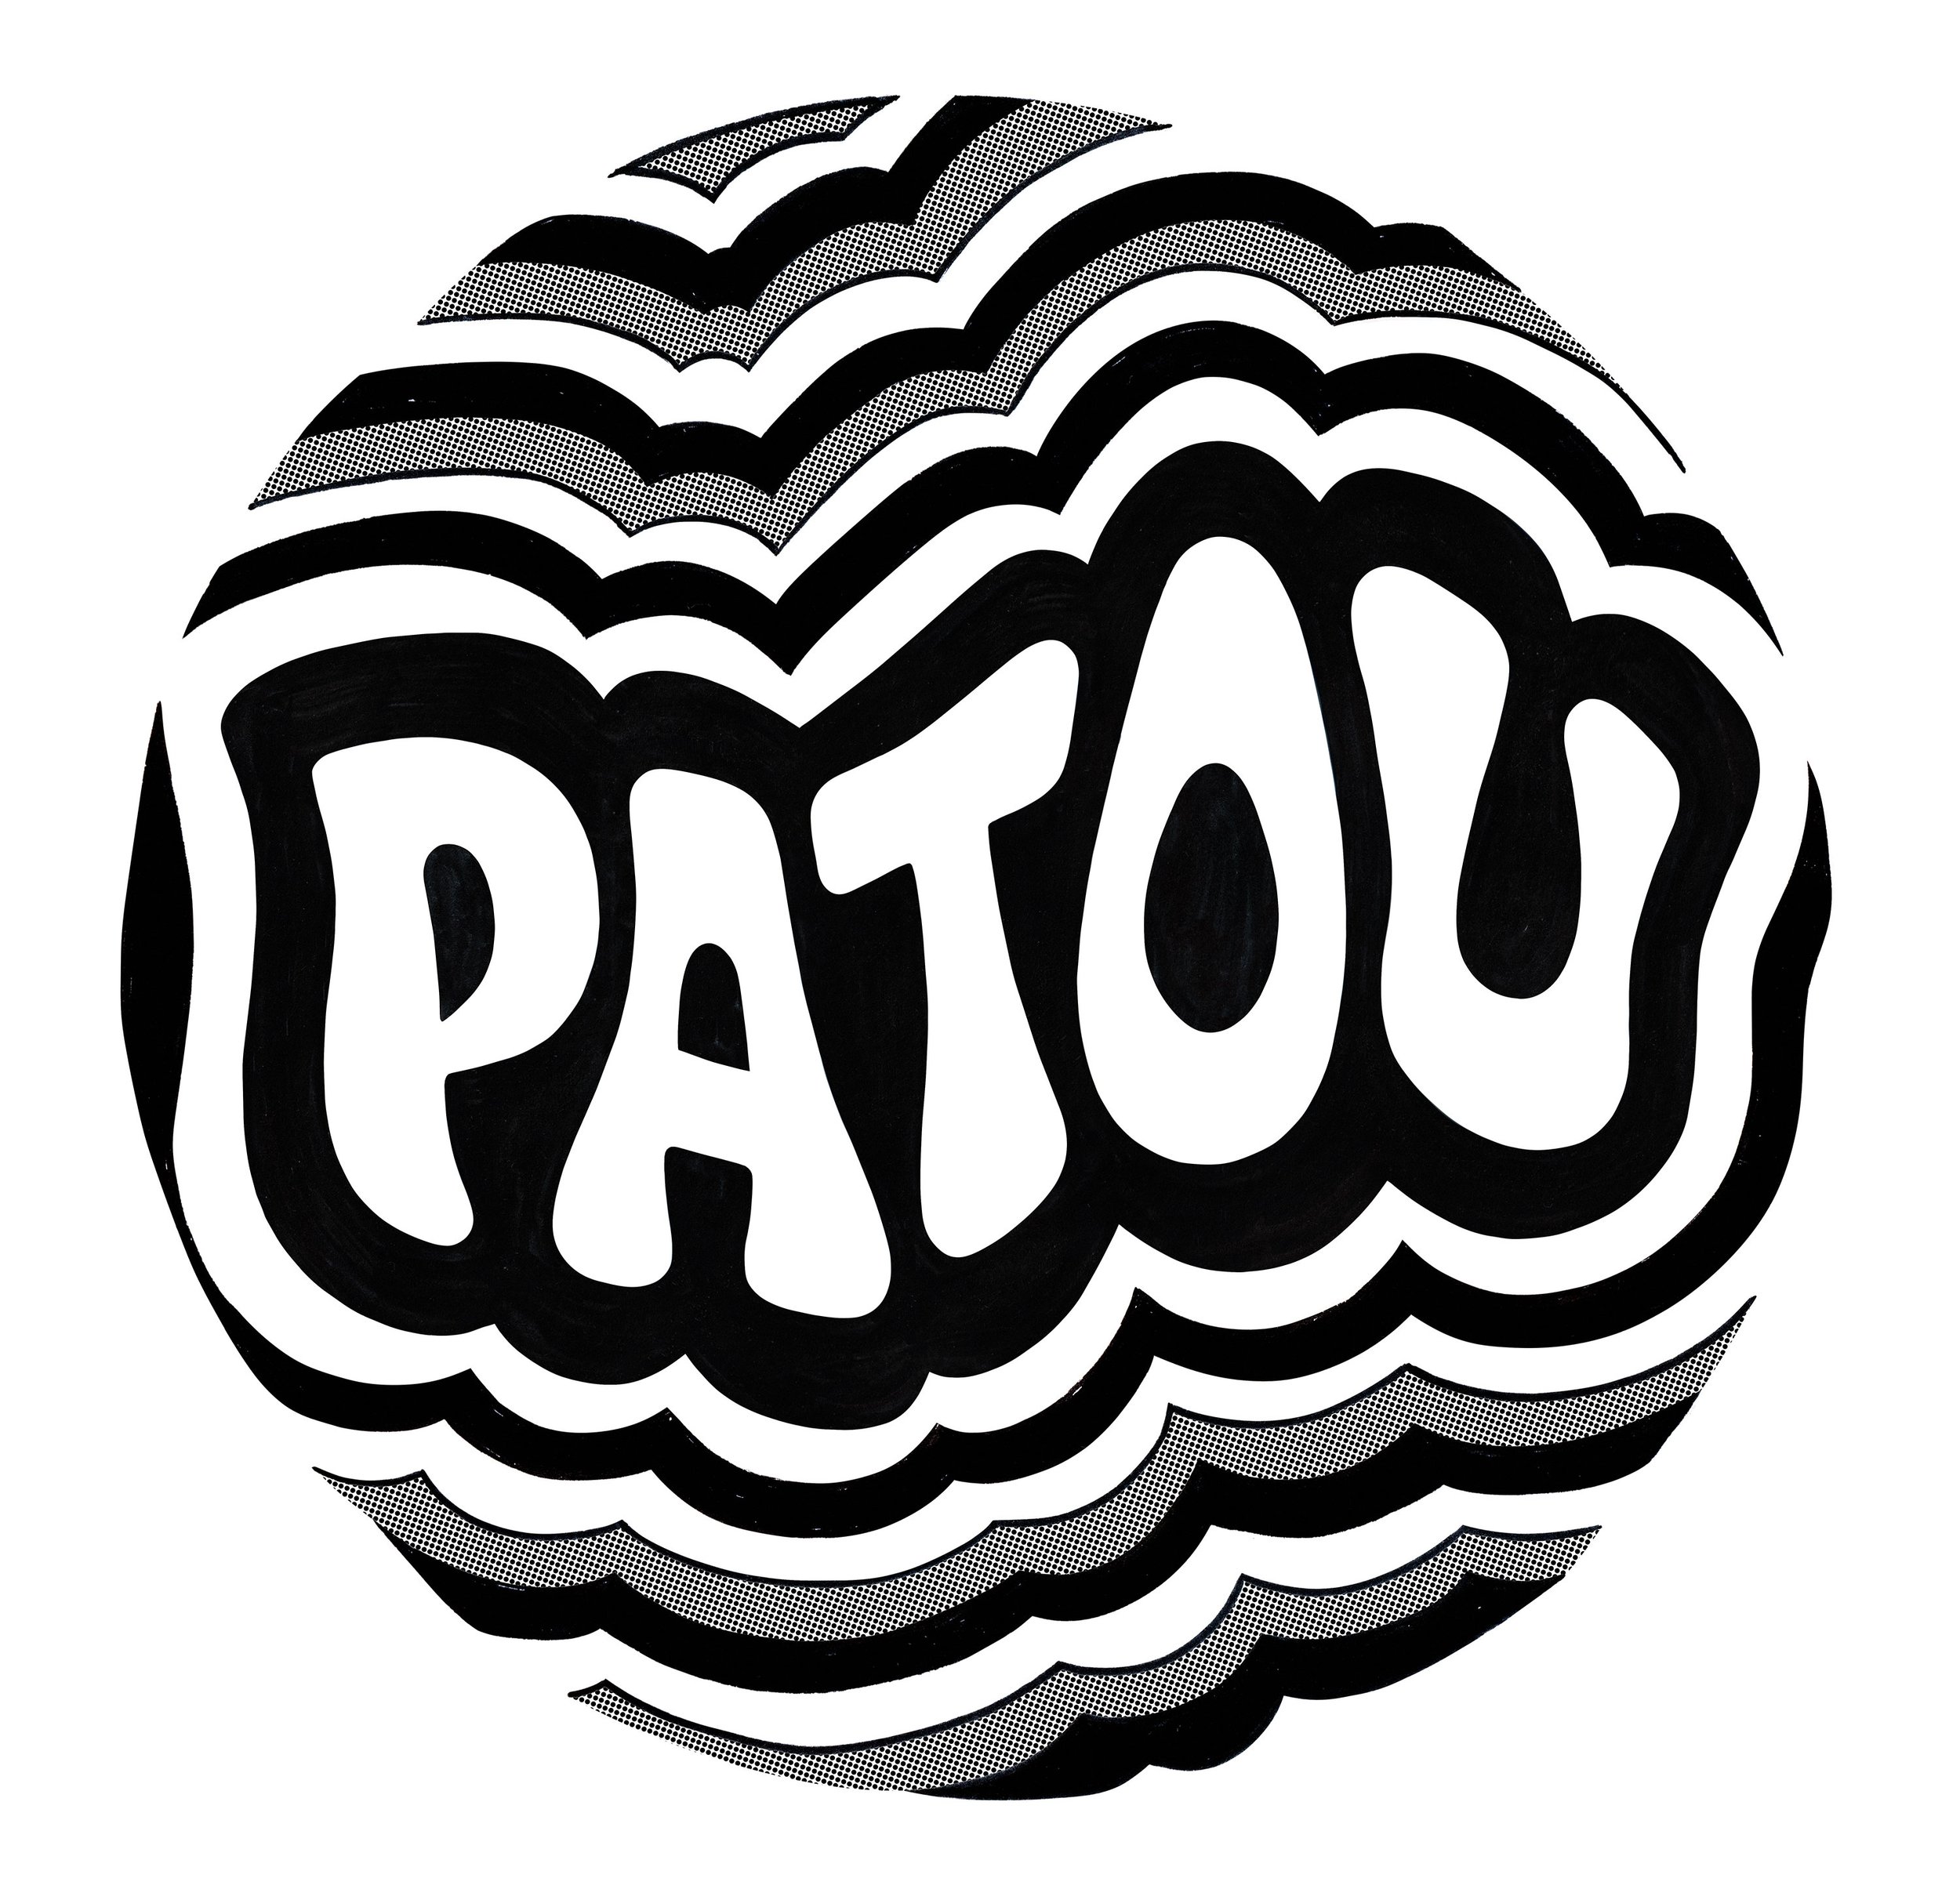 Patou Logo